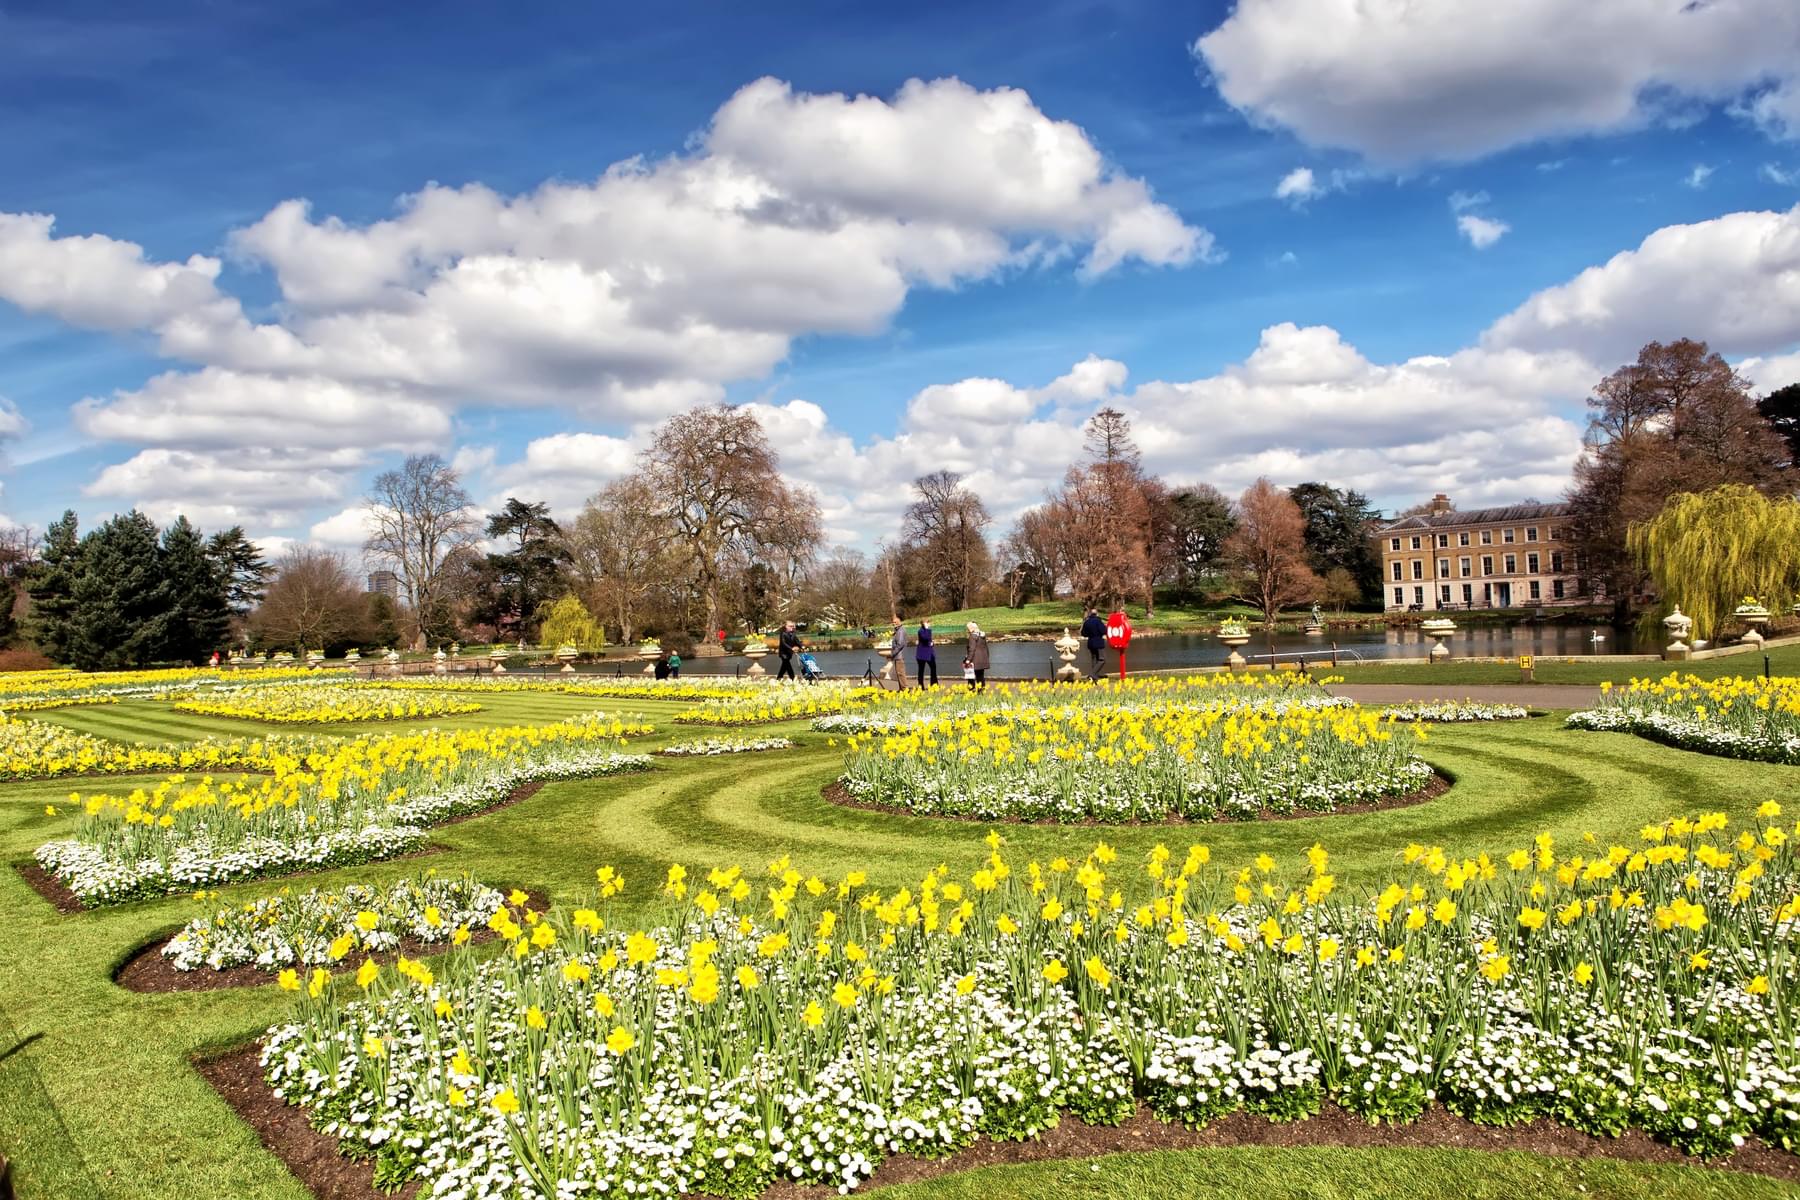 Why To Visit Kew Gardens?